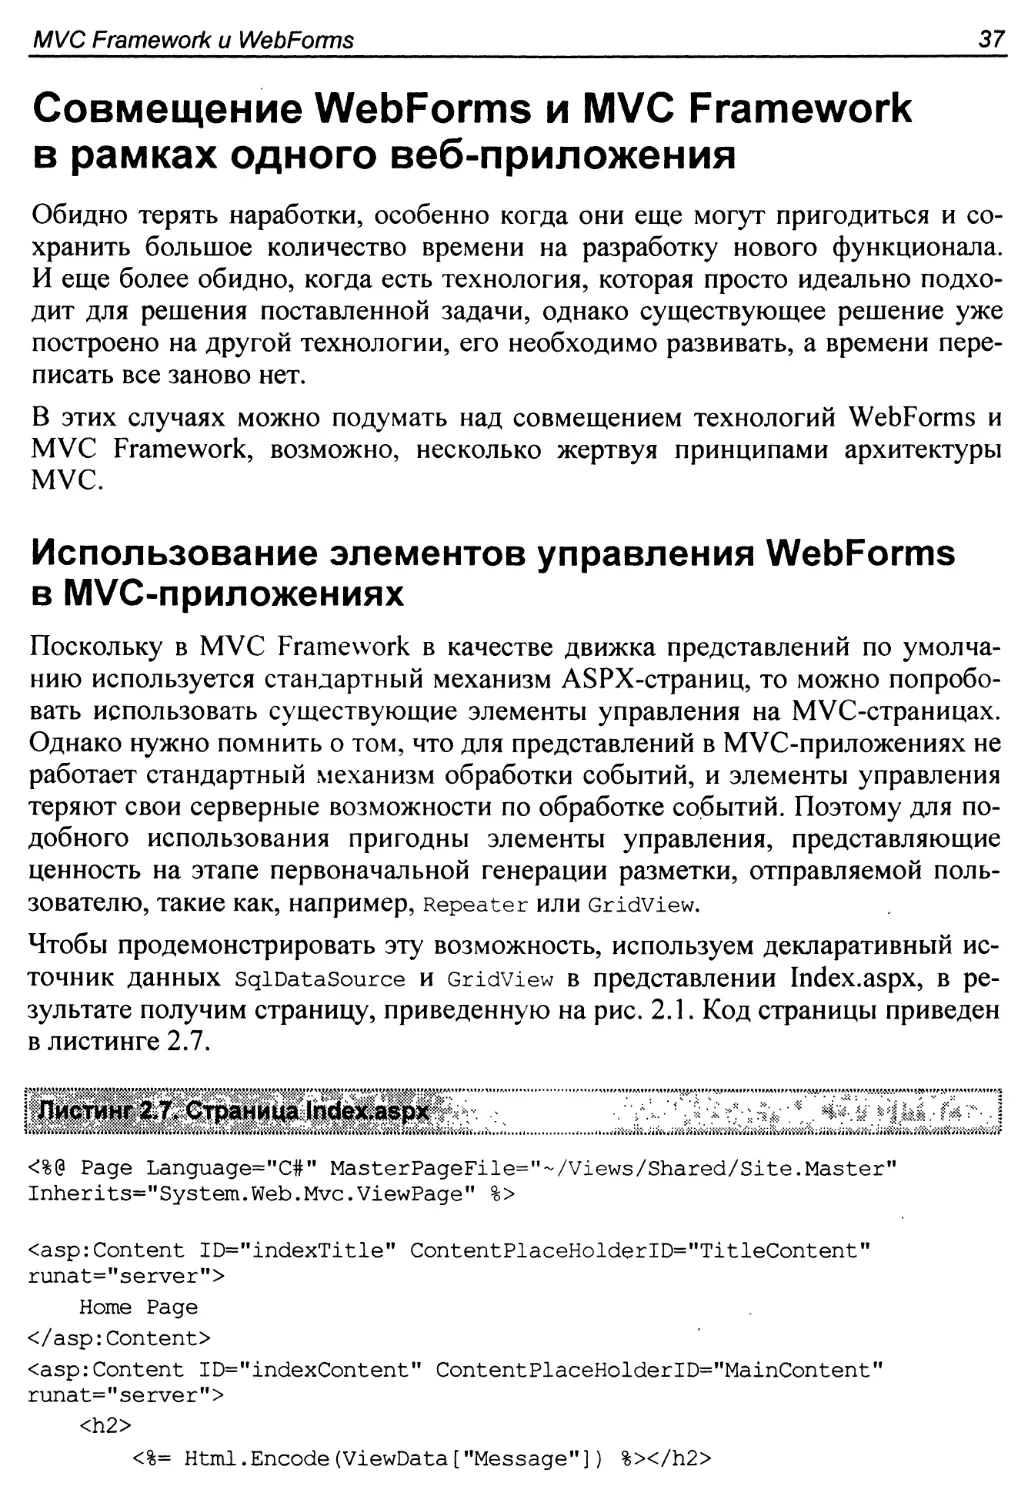 Совмещение WebForms и MVC Framework в рамках одного веб-приложения